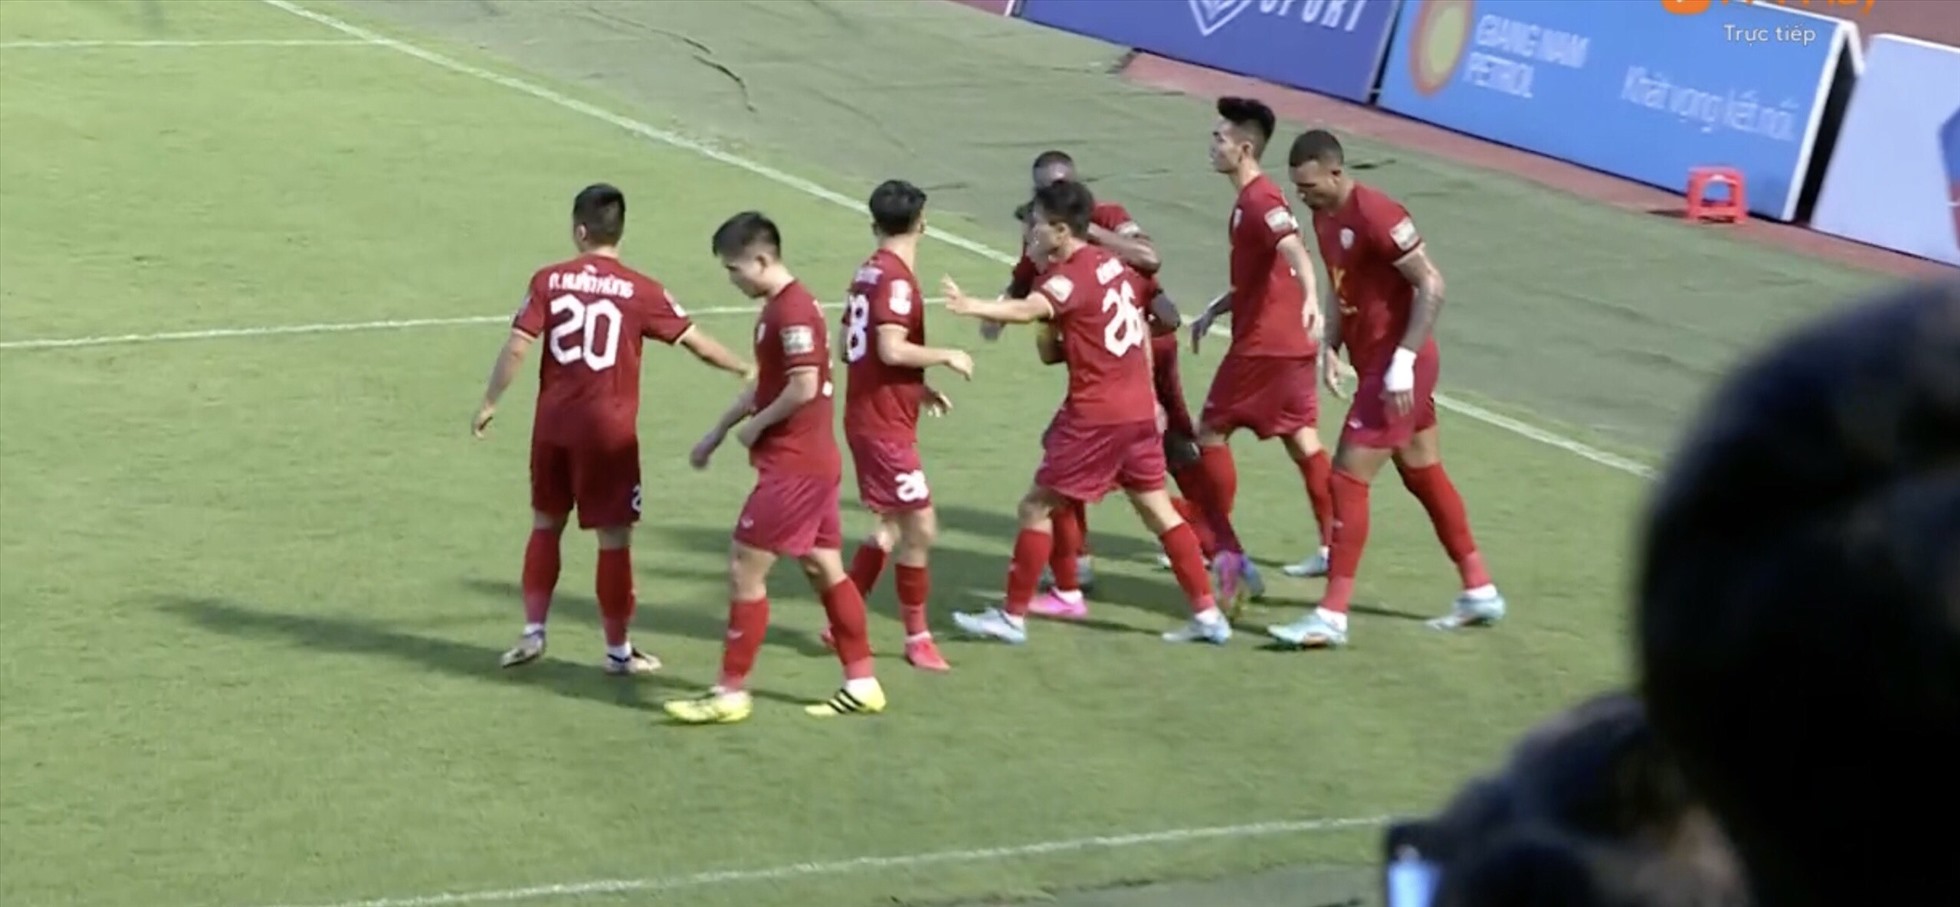 Câu lạc bộ Hà Tĩnh có bàn thắng ấn định chiến thắng 4-3 trước TPHCM ở phút bù giờ cuối cùng hiệp 2. Ảnh cắt từ video